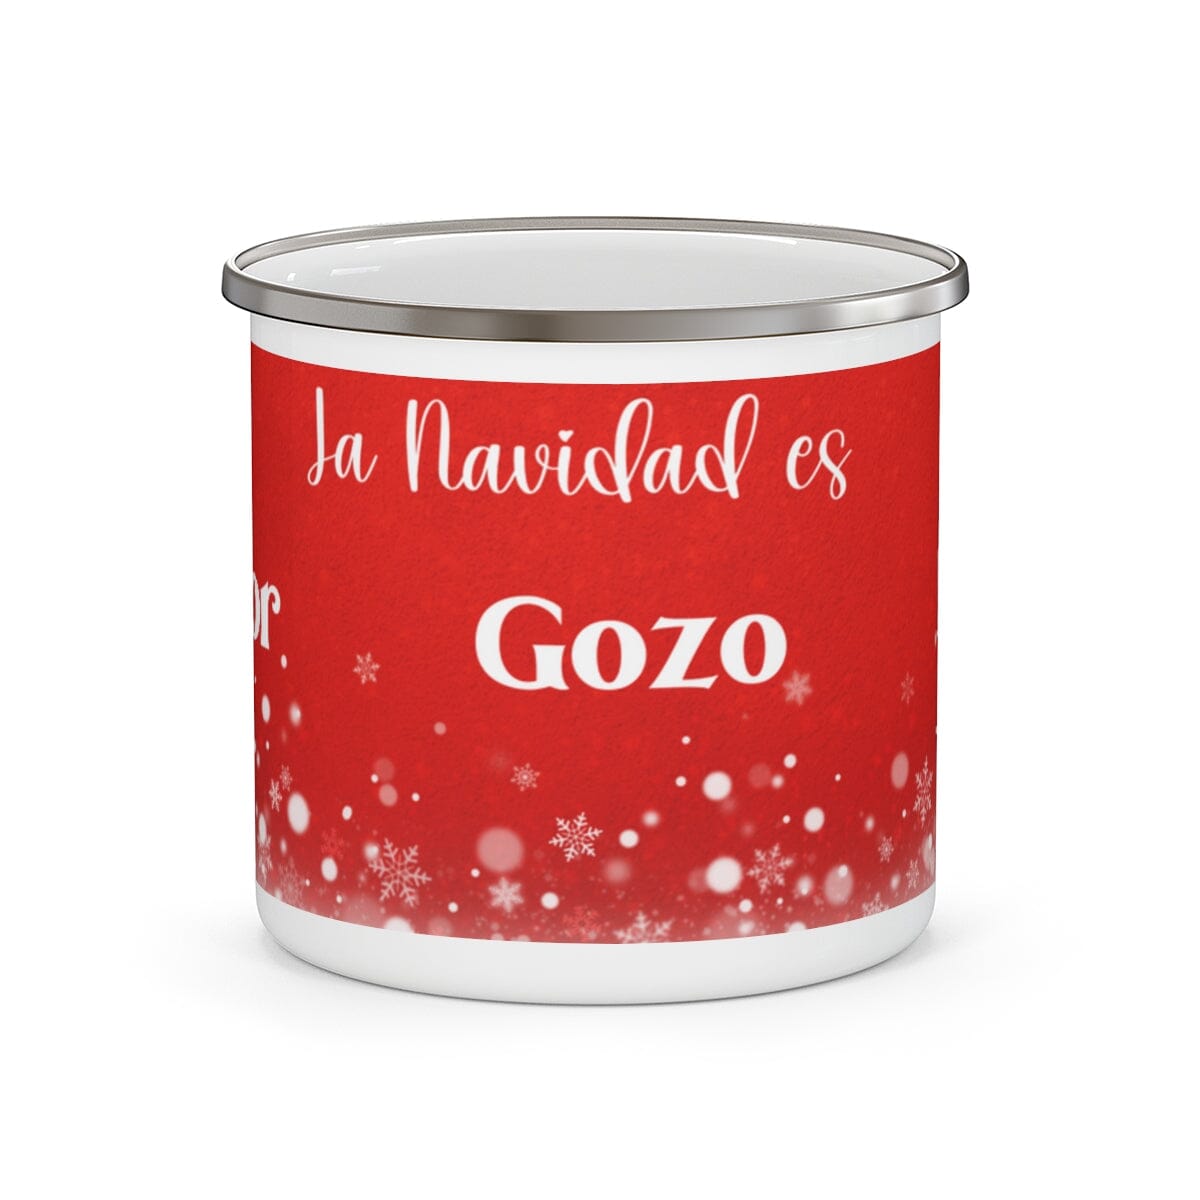 La Navidad es Amor, Gozo, Paz - Taza metálica para café - 12 onzas Mug Printify 